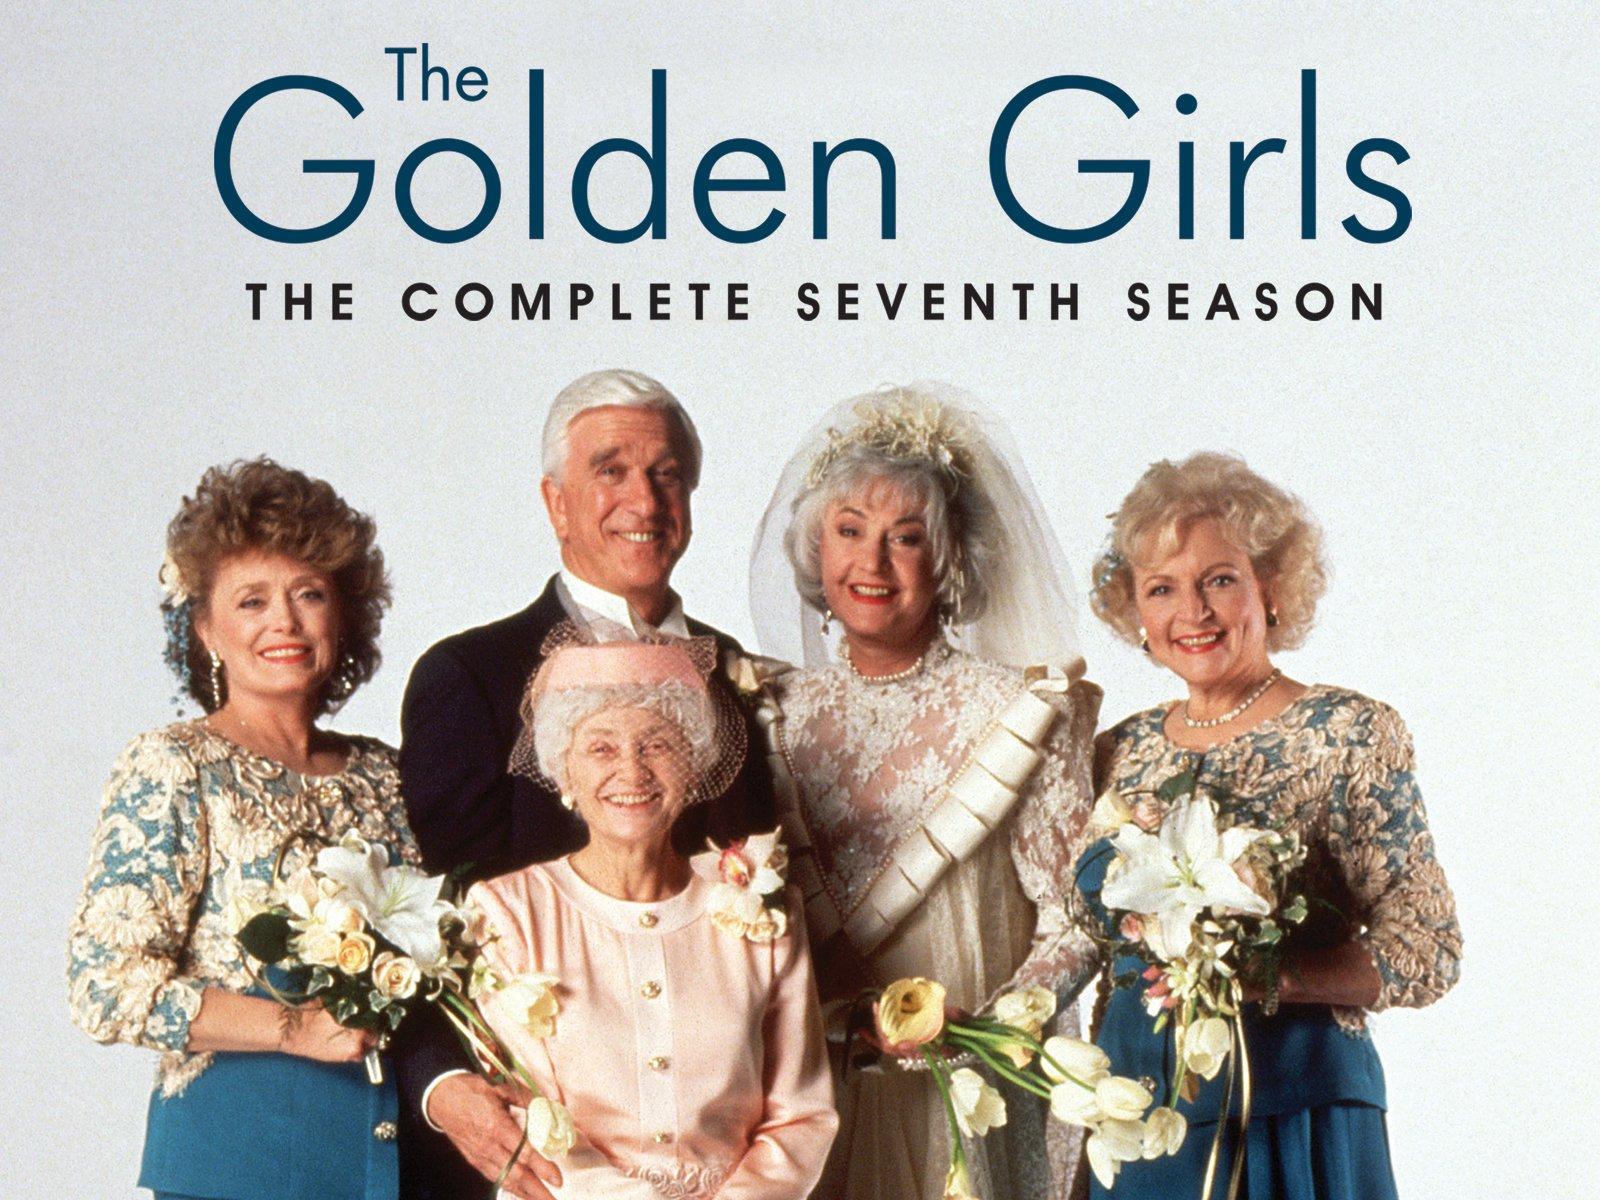 Watch The Golden Girls Season 7